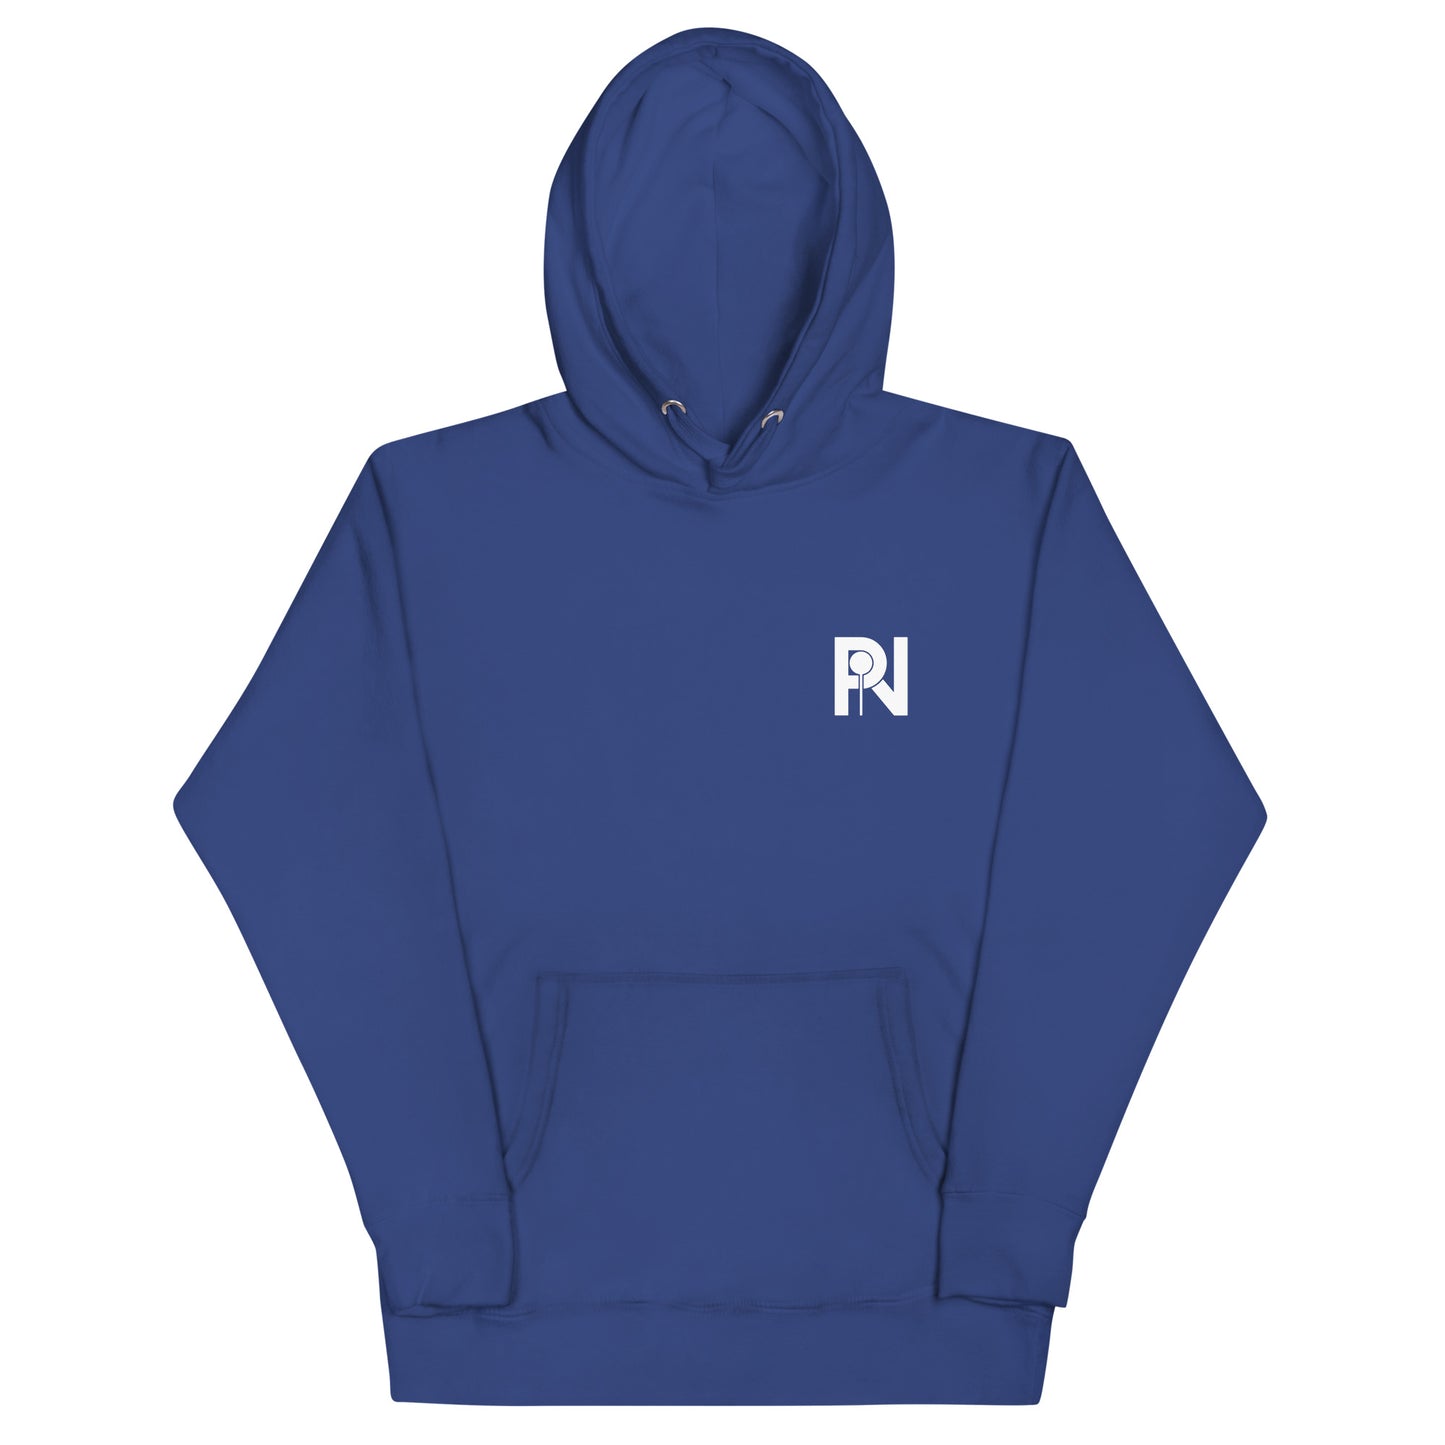 Unisex simple logo hoodie